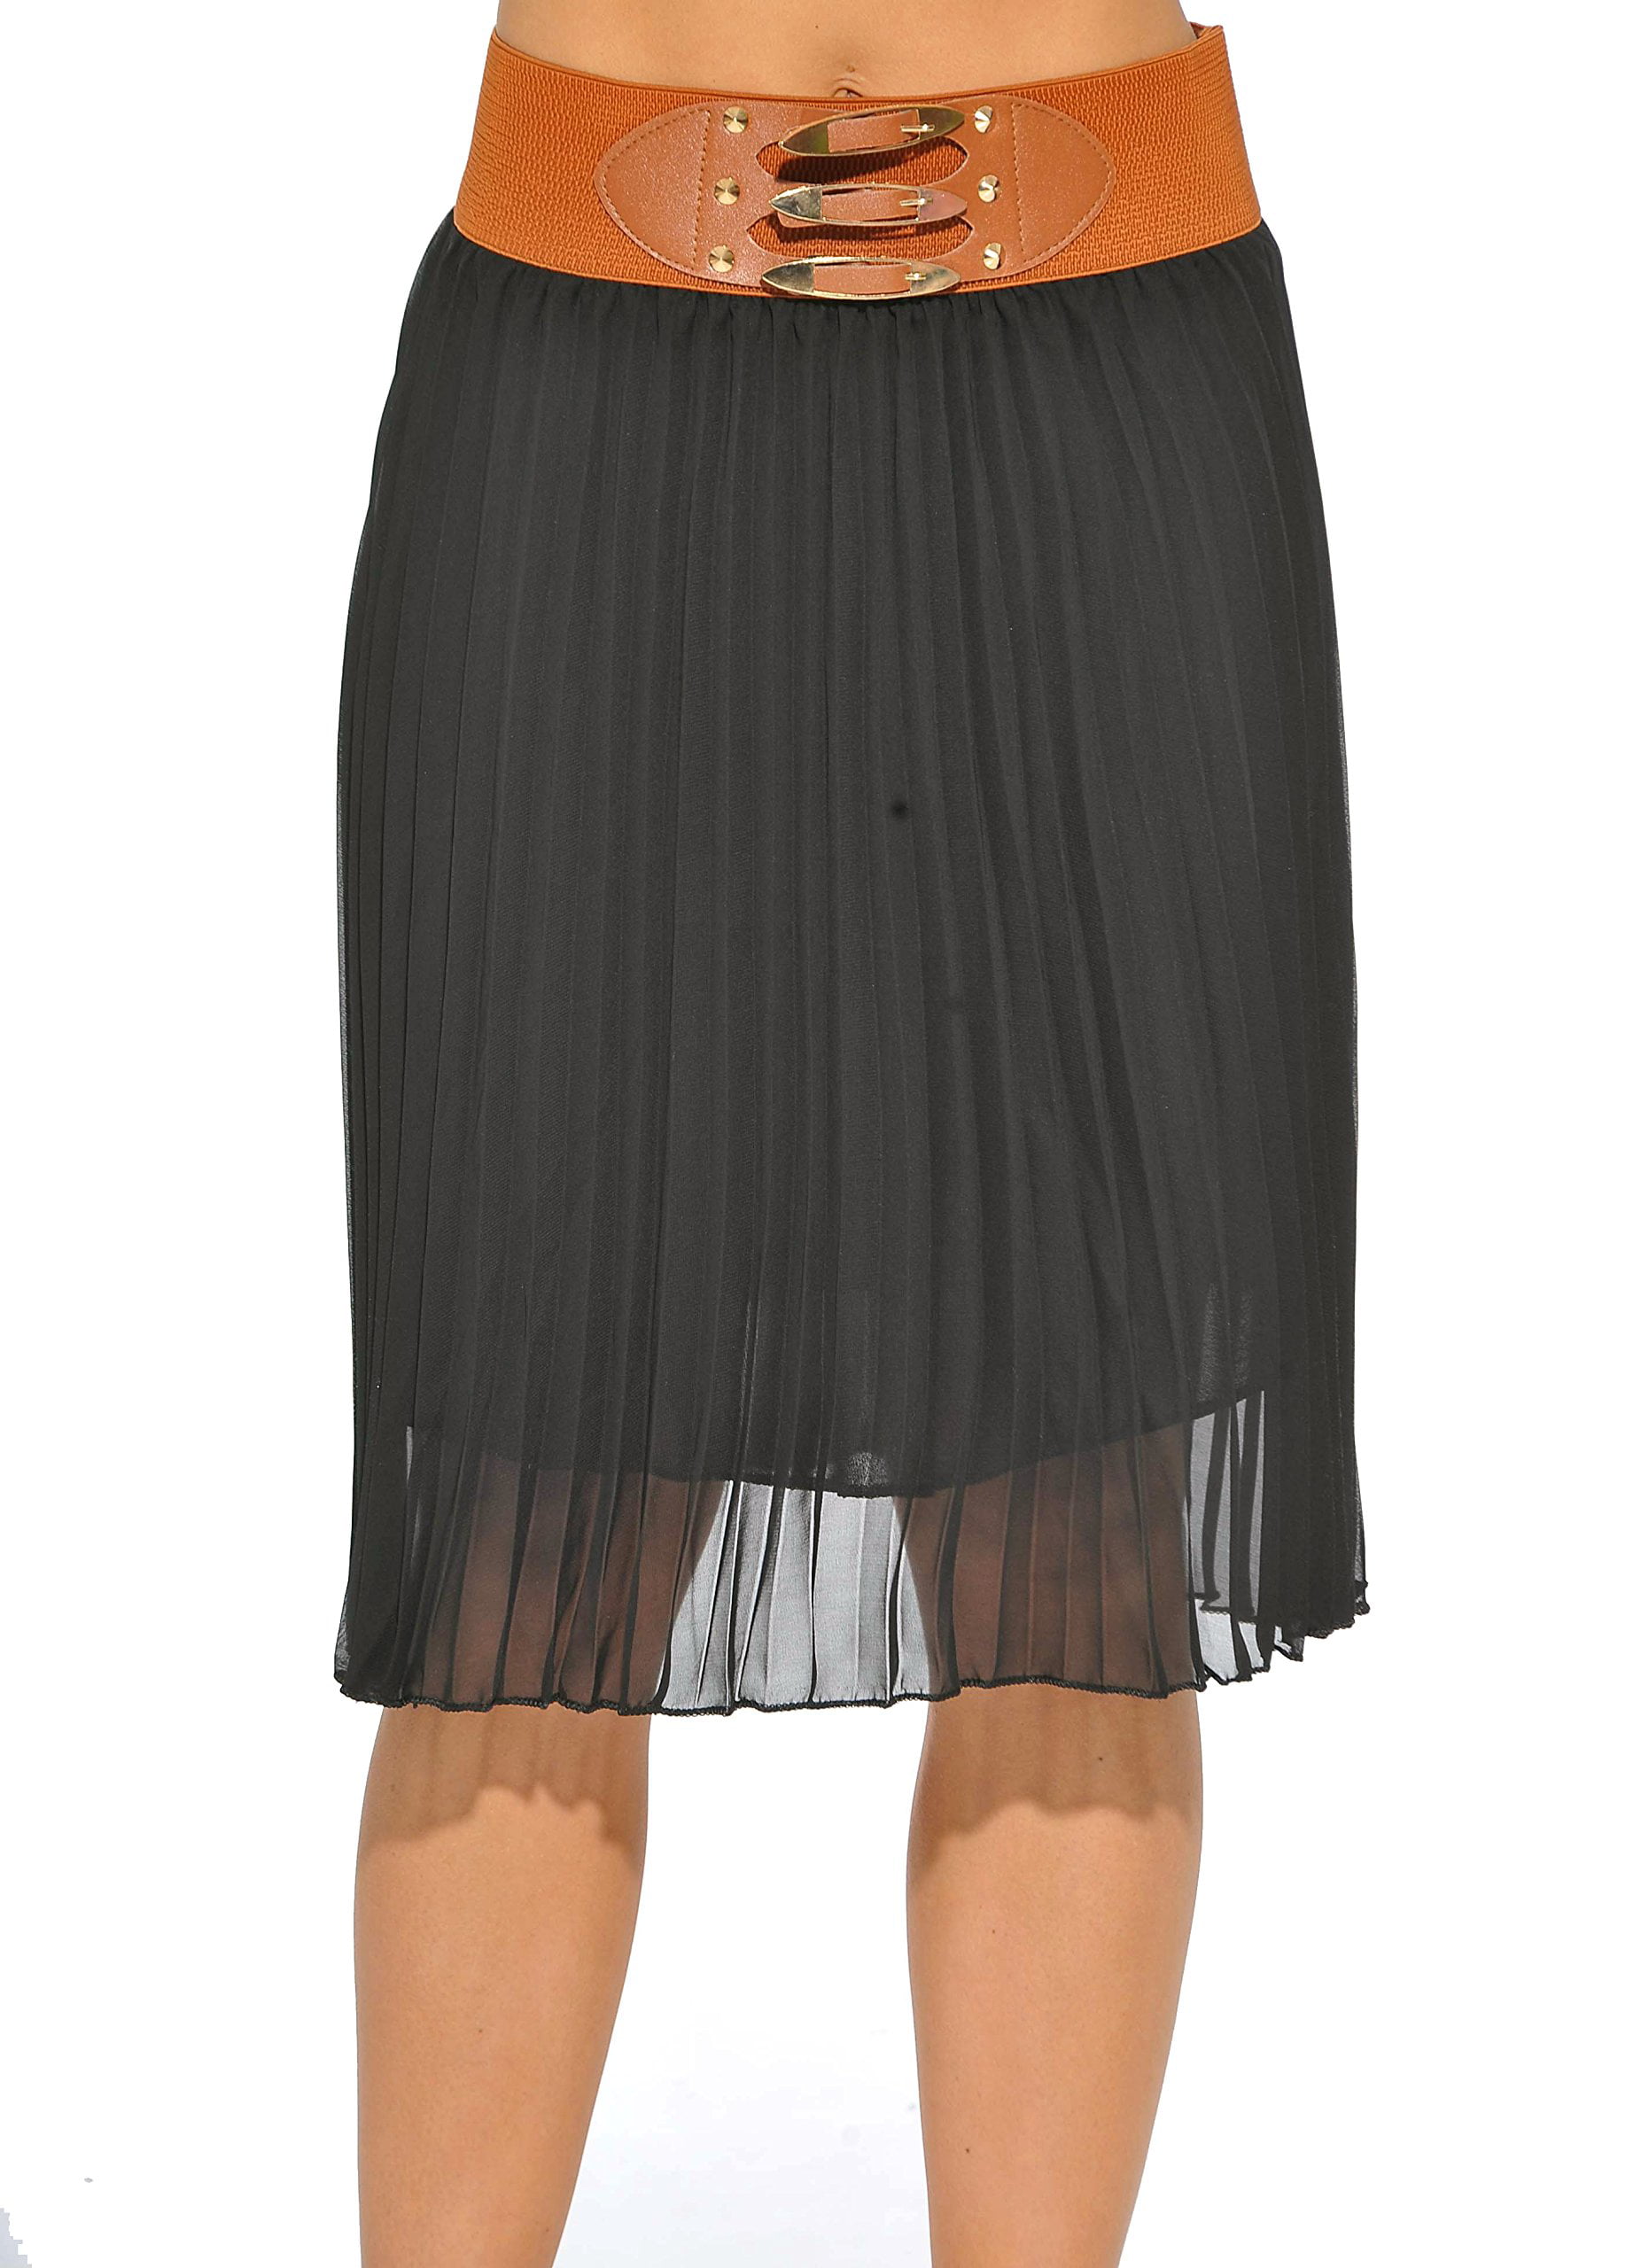 Just Love Skirts / Pleated Skirt (Black, Large) - Walmart.com